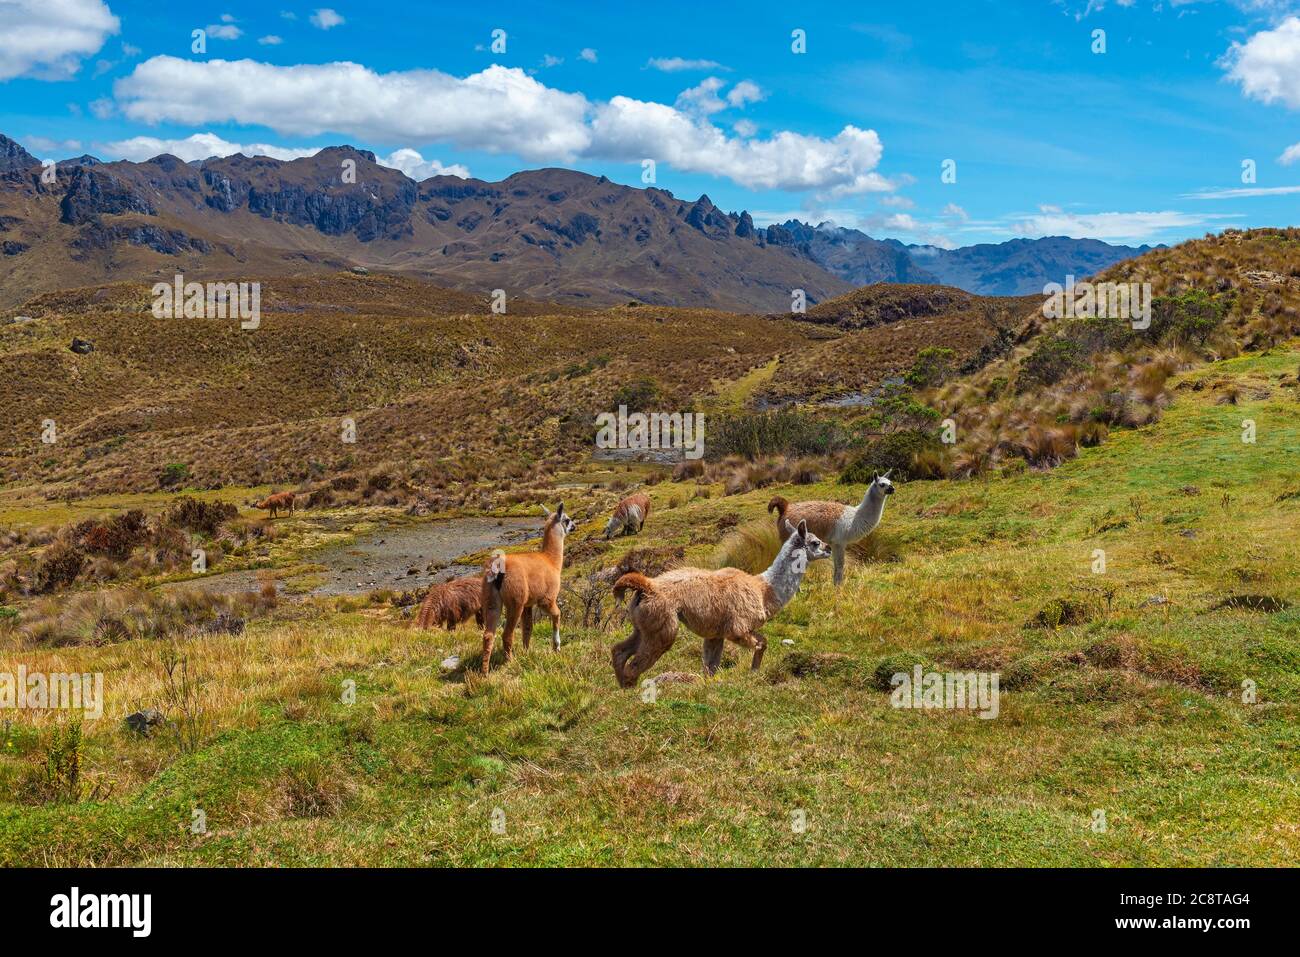 Un gregge di lama (lama glama) nel parco nazionale di Cajas, le montagne delle Ande, Cuenca, Ecuador. Foto Stock